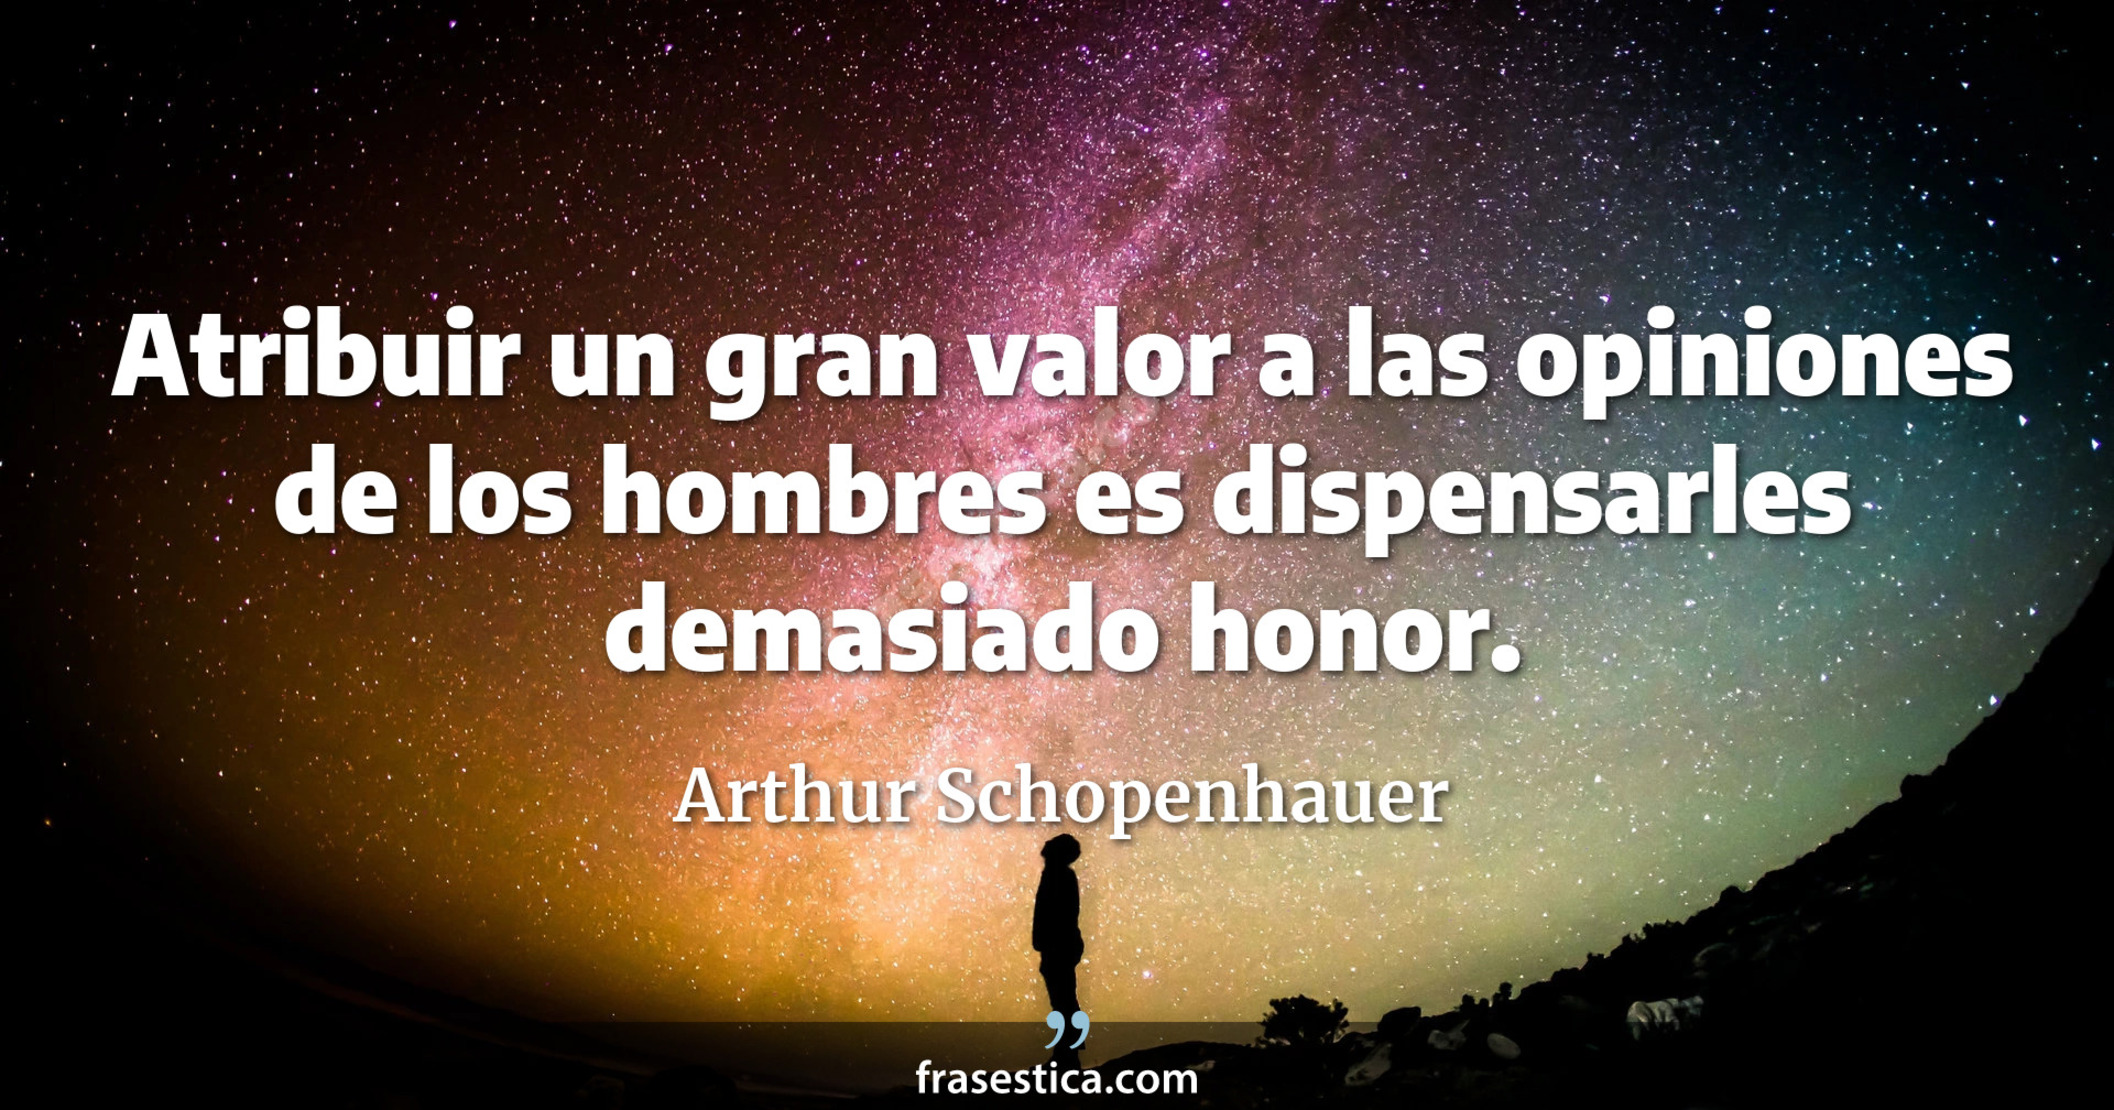 Atribuir un gran valor a las opiniones de los hombres es dispensarles demasiado honor. - Arthur Schopenhauer